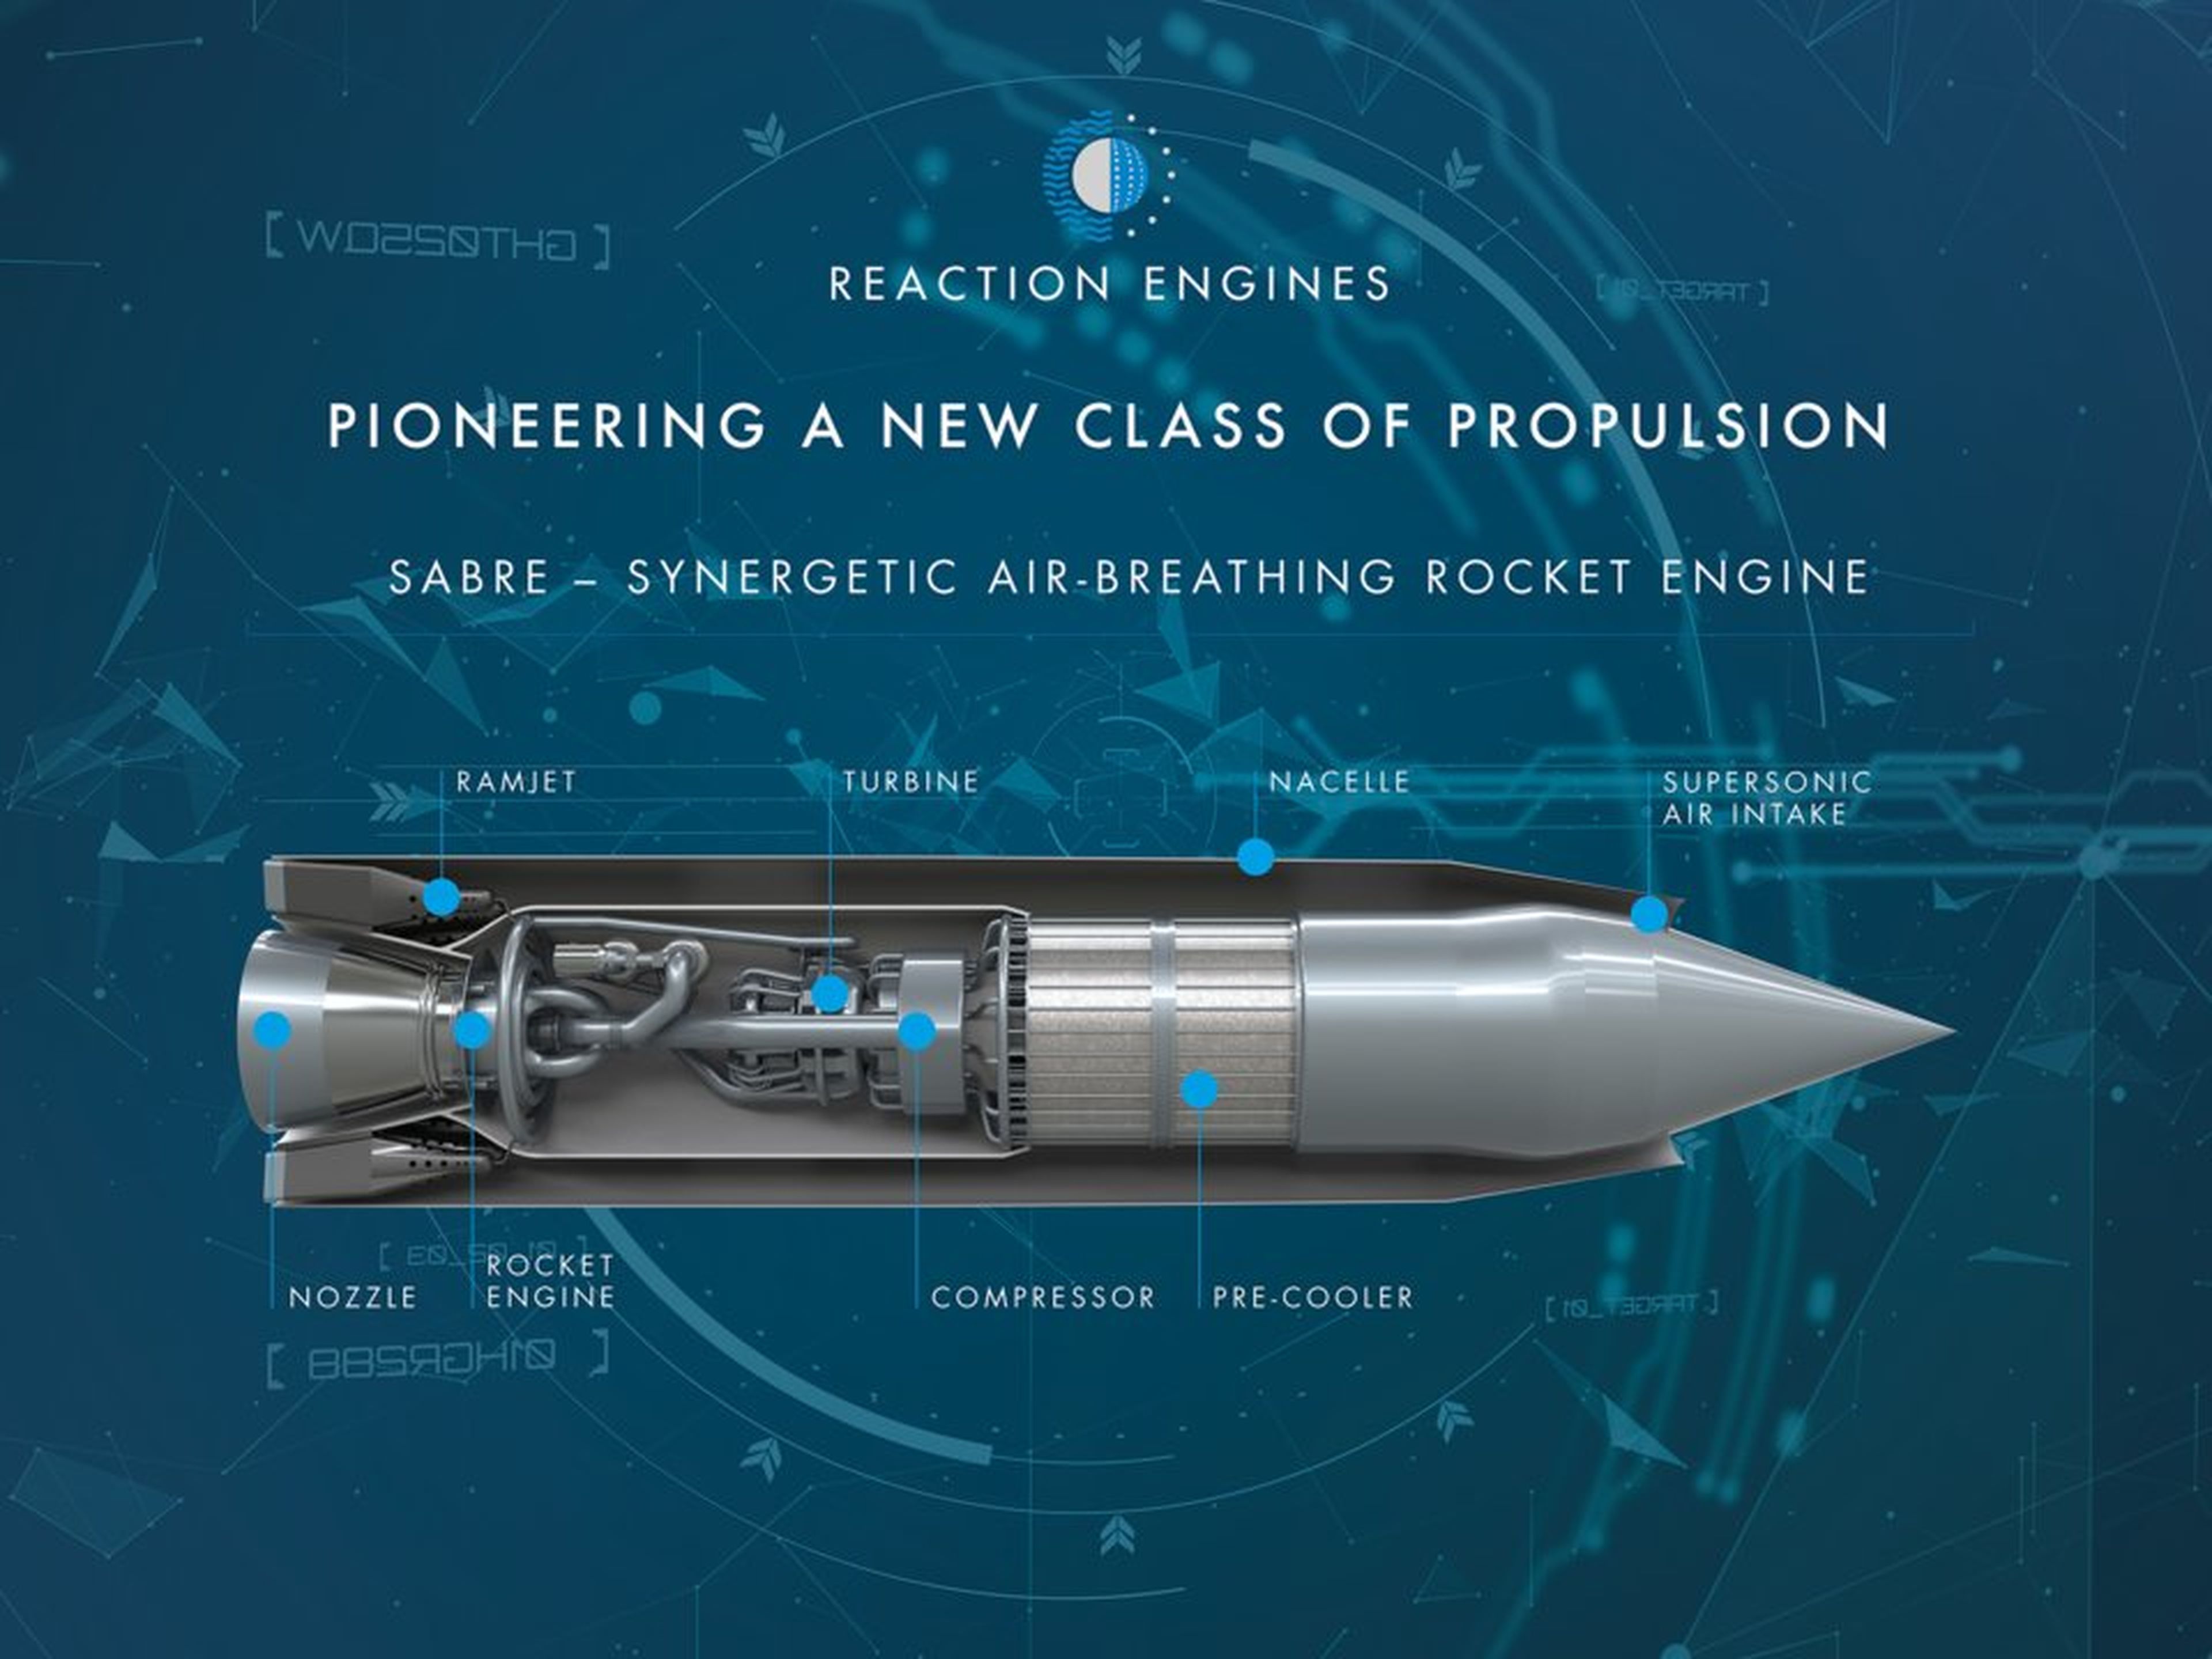 El cohete de hidrógeno basado en el aire es más ecológico y barato que la tecnología actual de transporte aéreo.